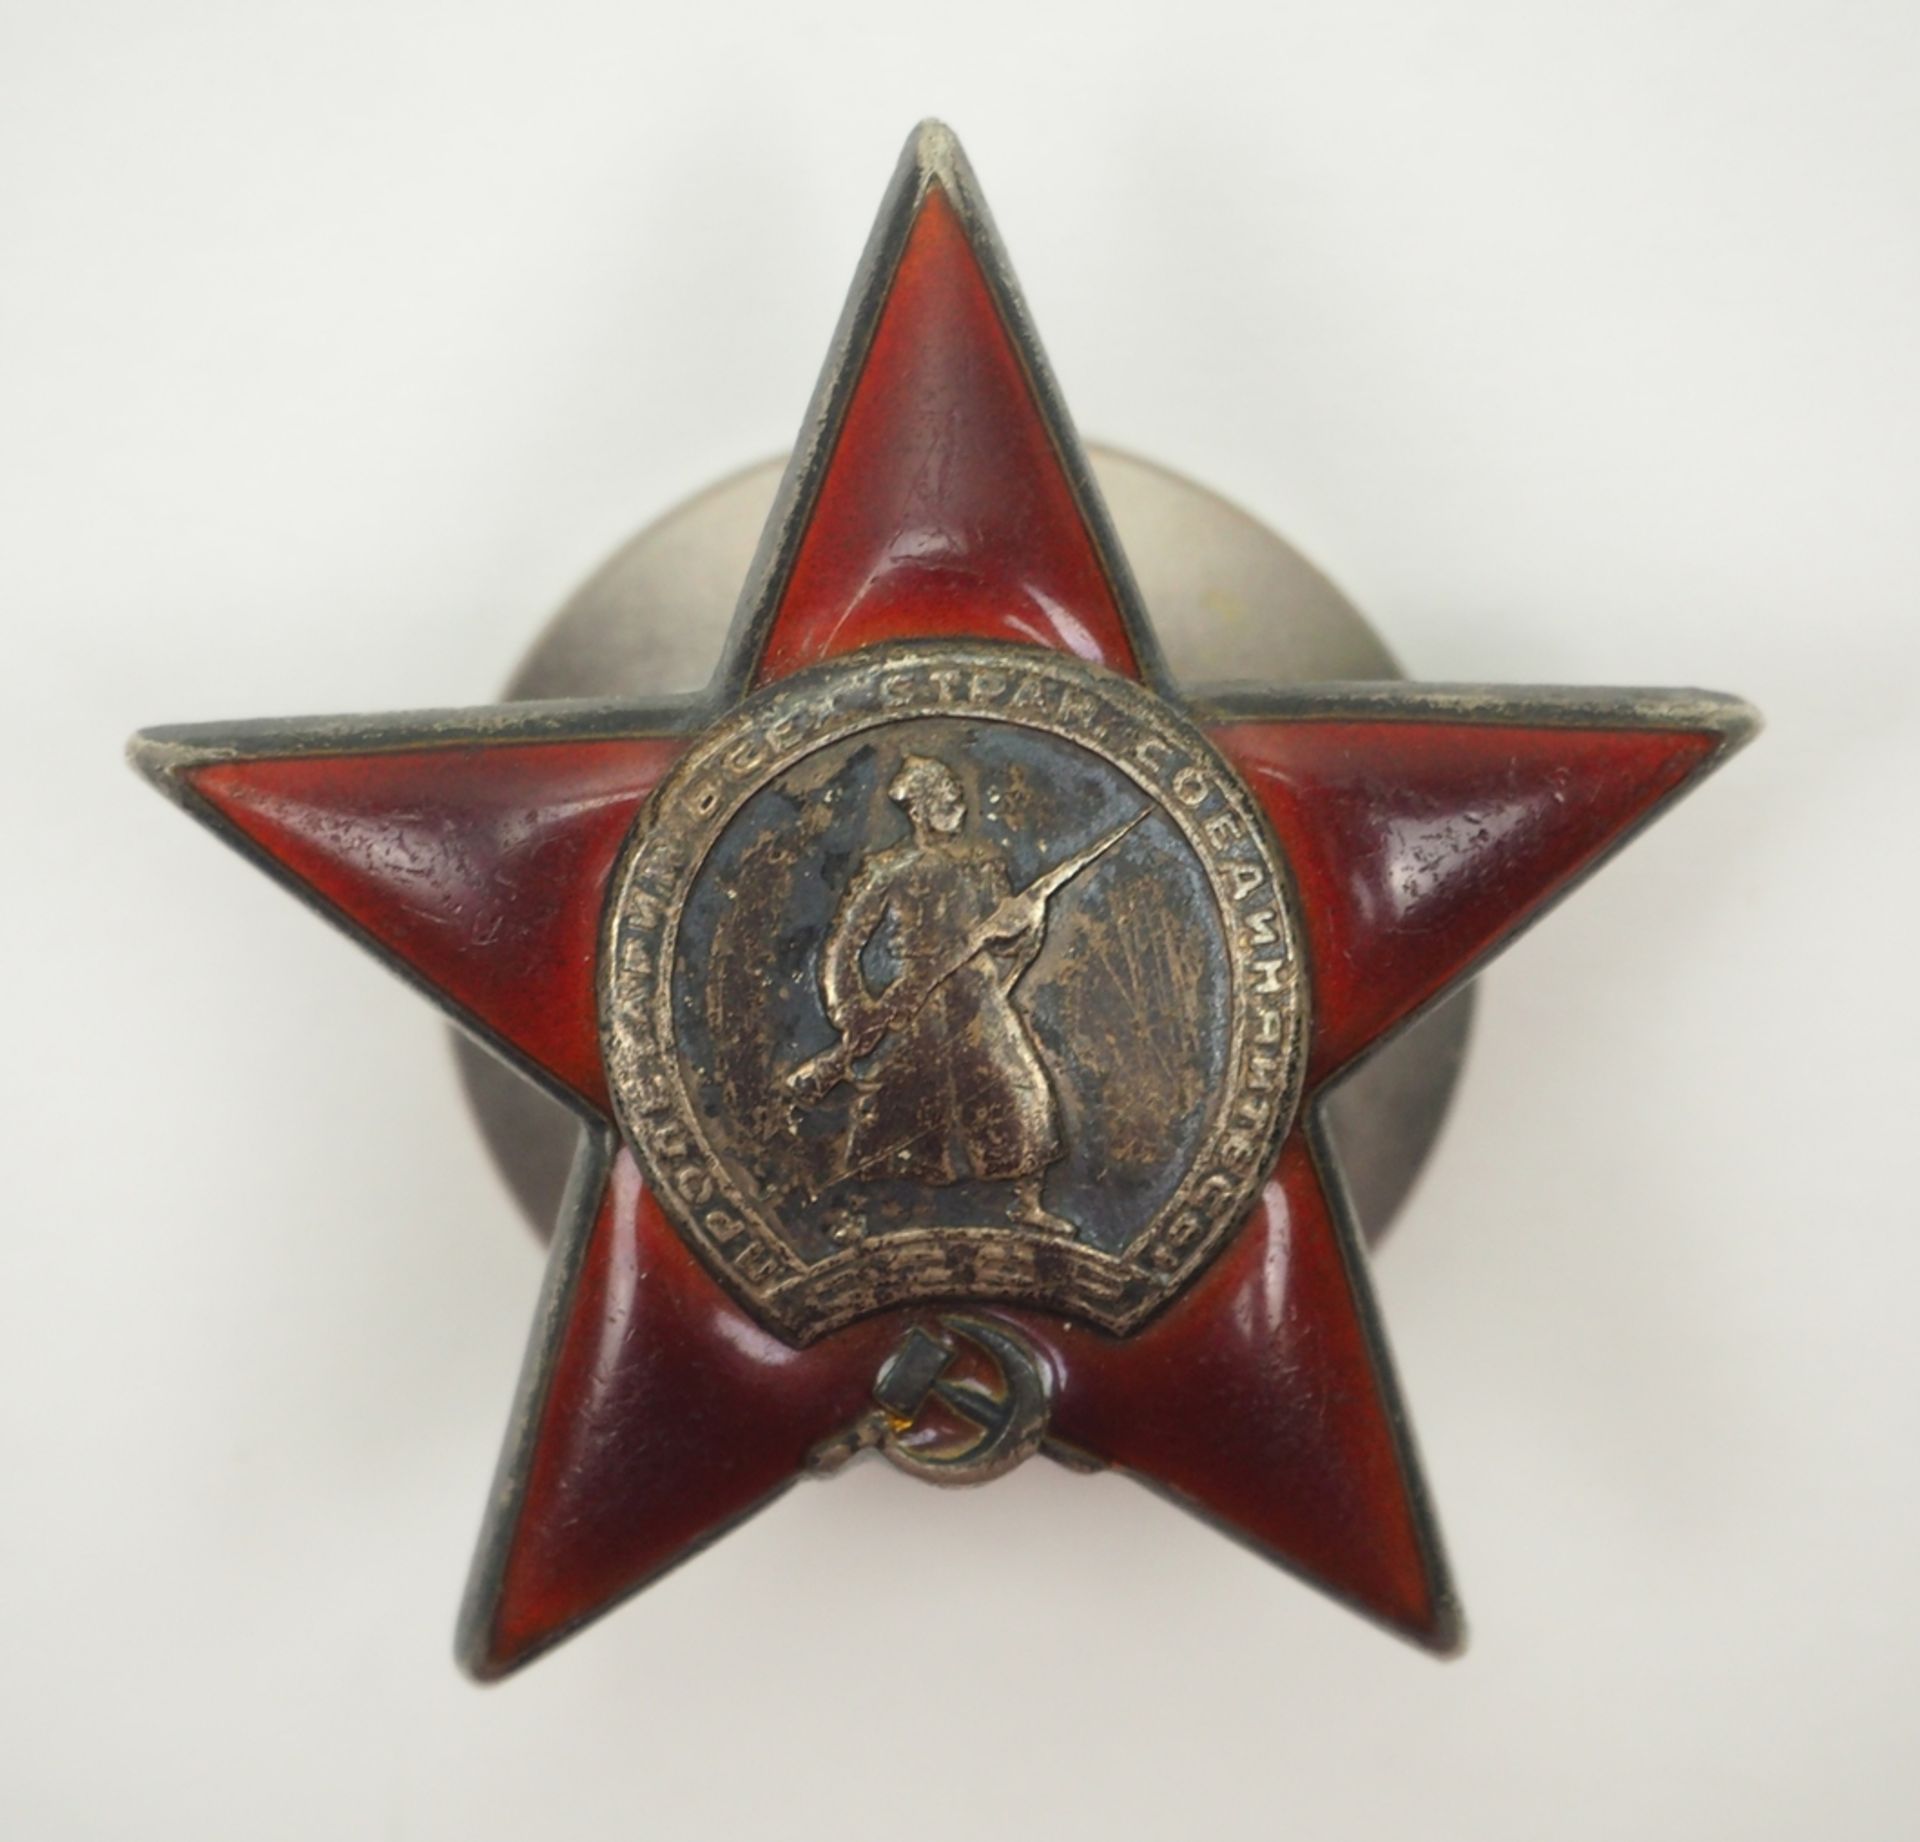 Sowjetunion: Orden des Roten Sterns, 4. Modell, 3. Typ - 82163.